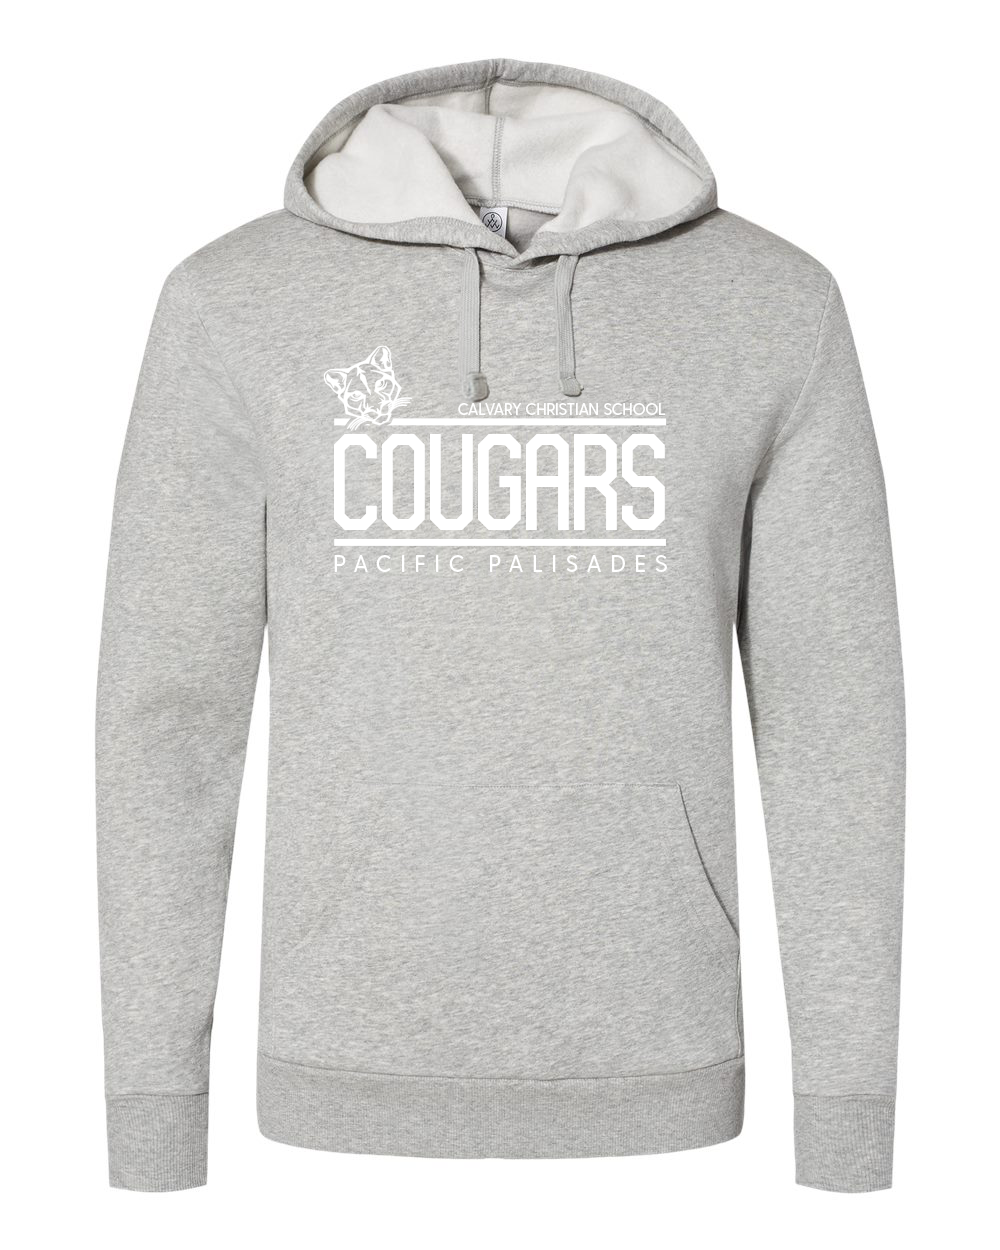 Cougars Varsity - Adult Hoodie